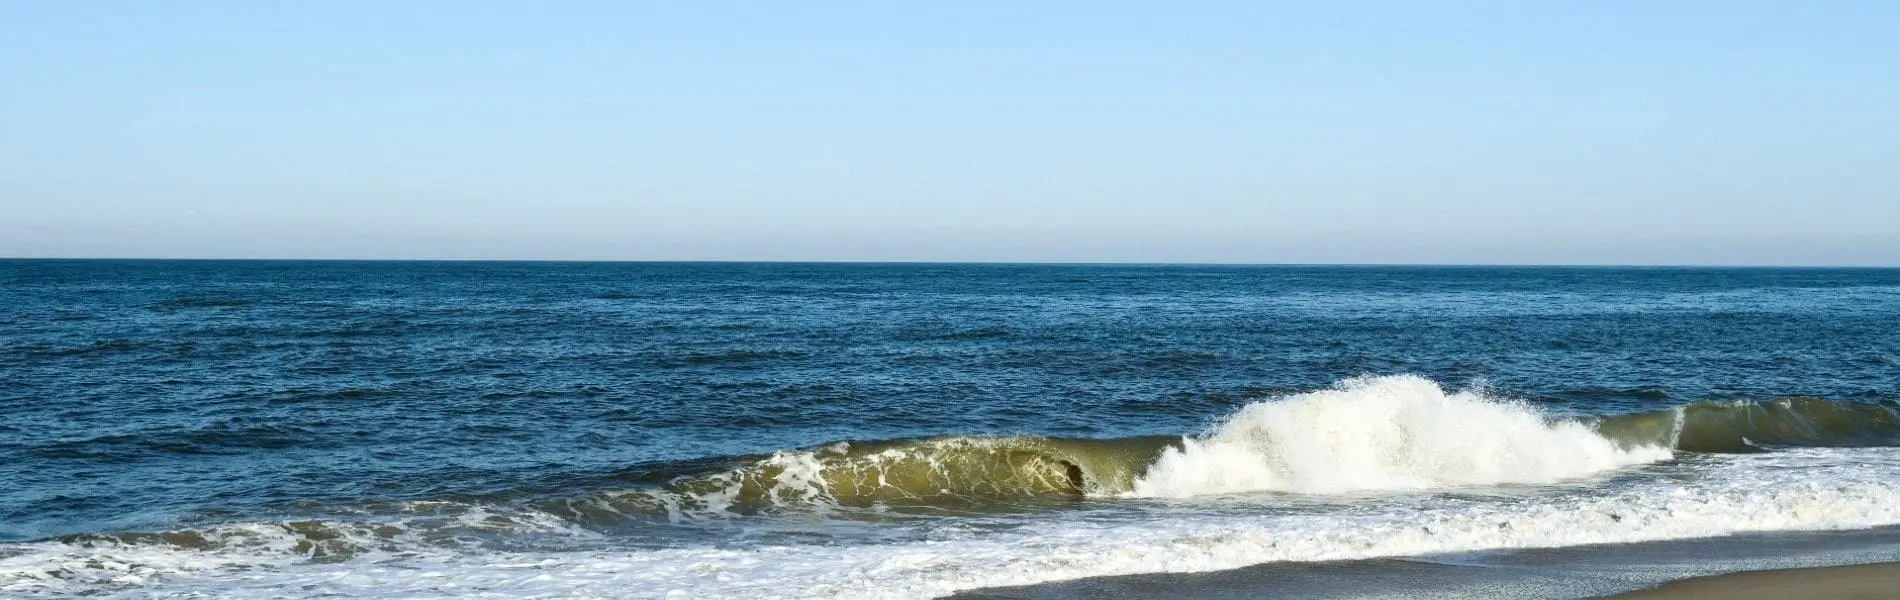 Beach surf near Henlopen Acres, Delaware